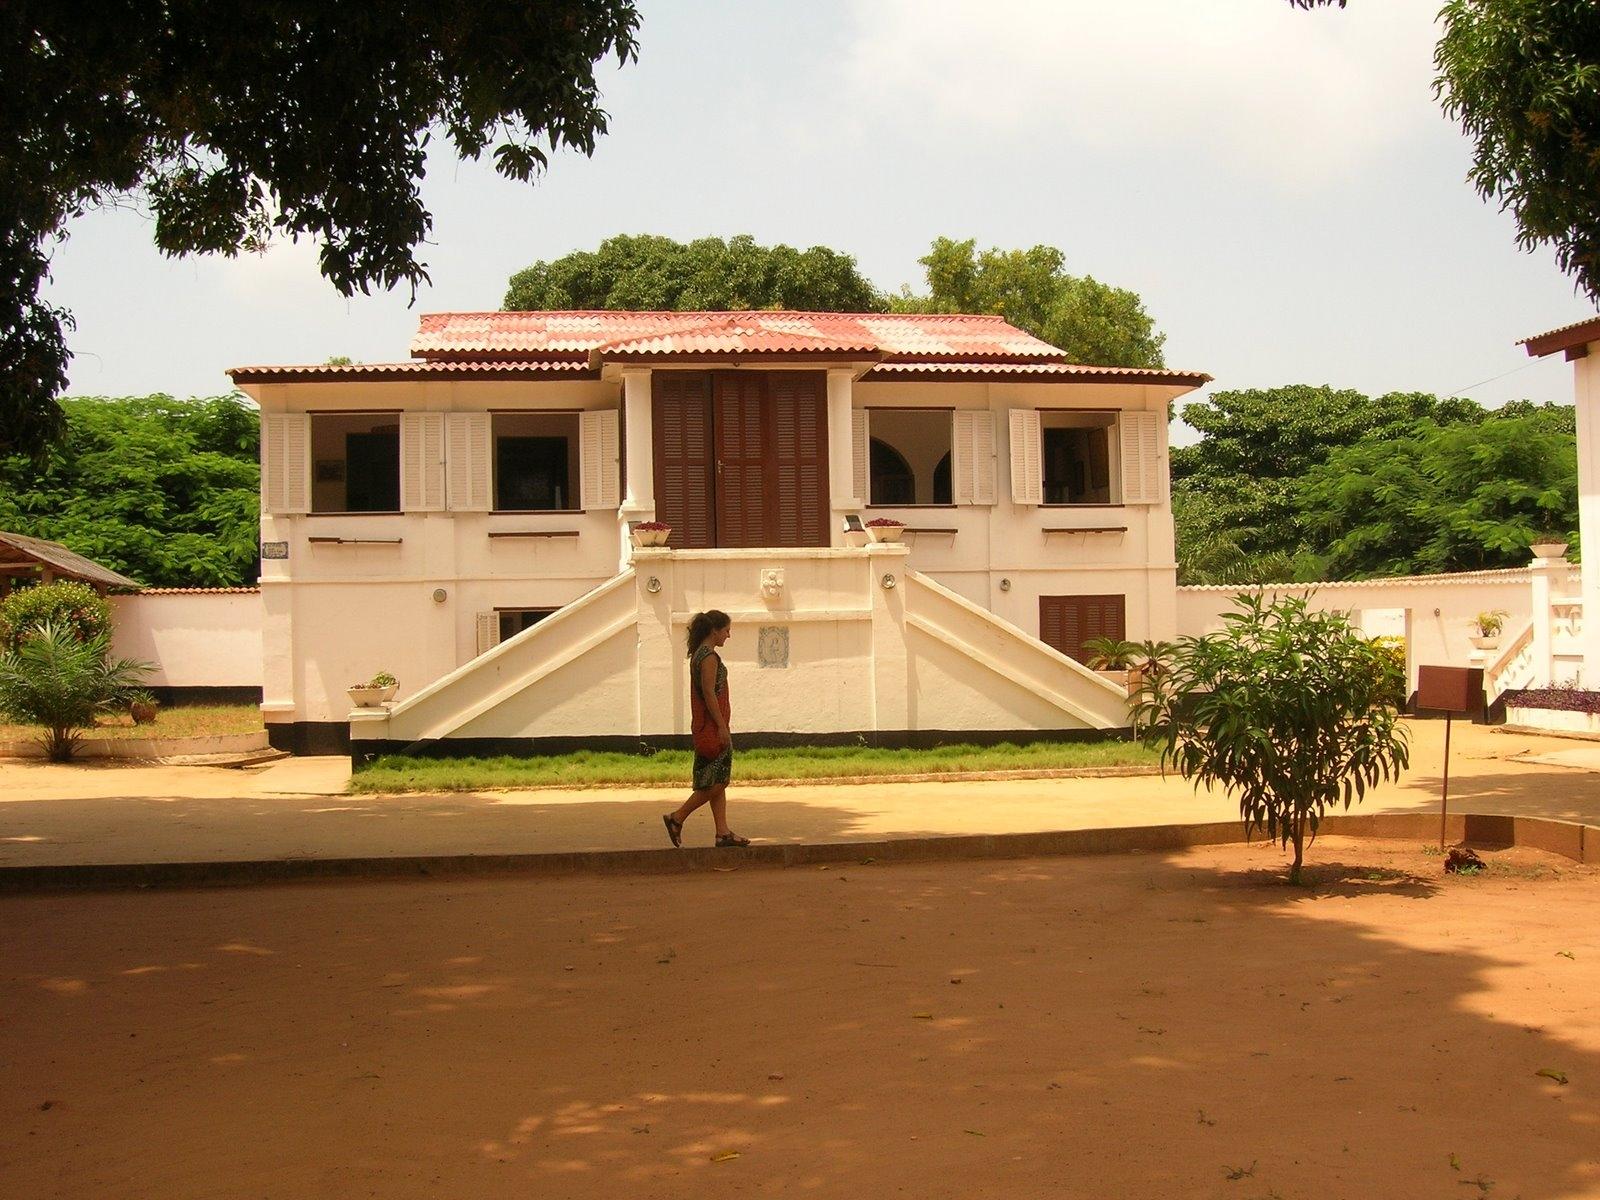 維達歷史博物館 Ouidah Museum of History